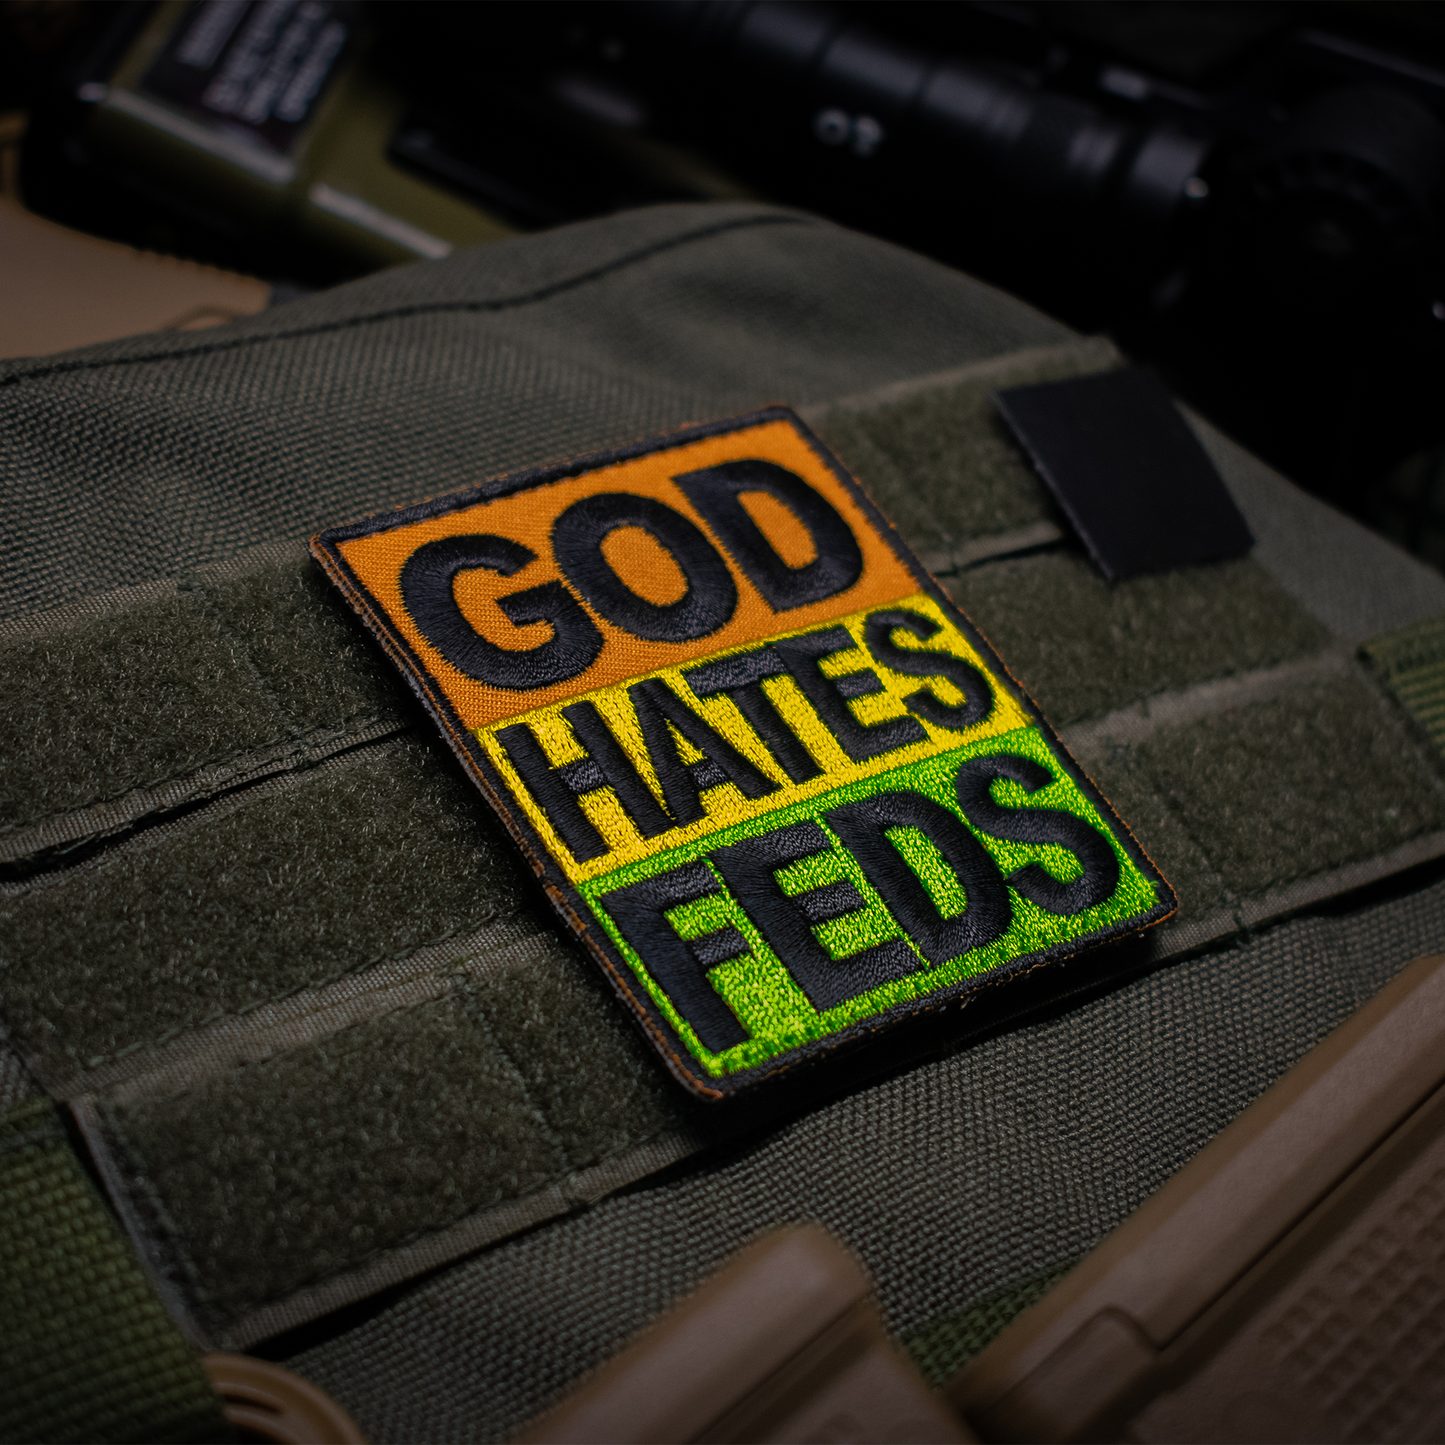 God Hates Feds